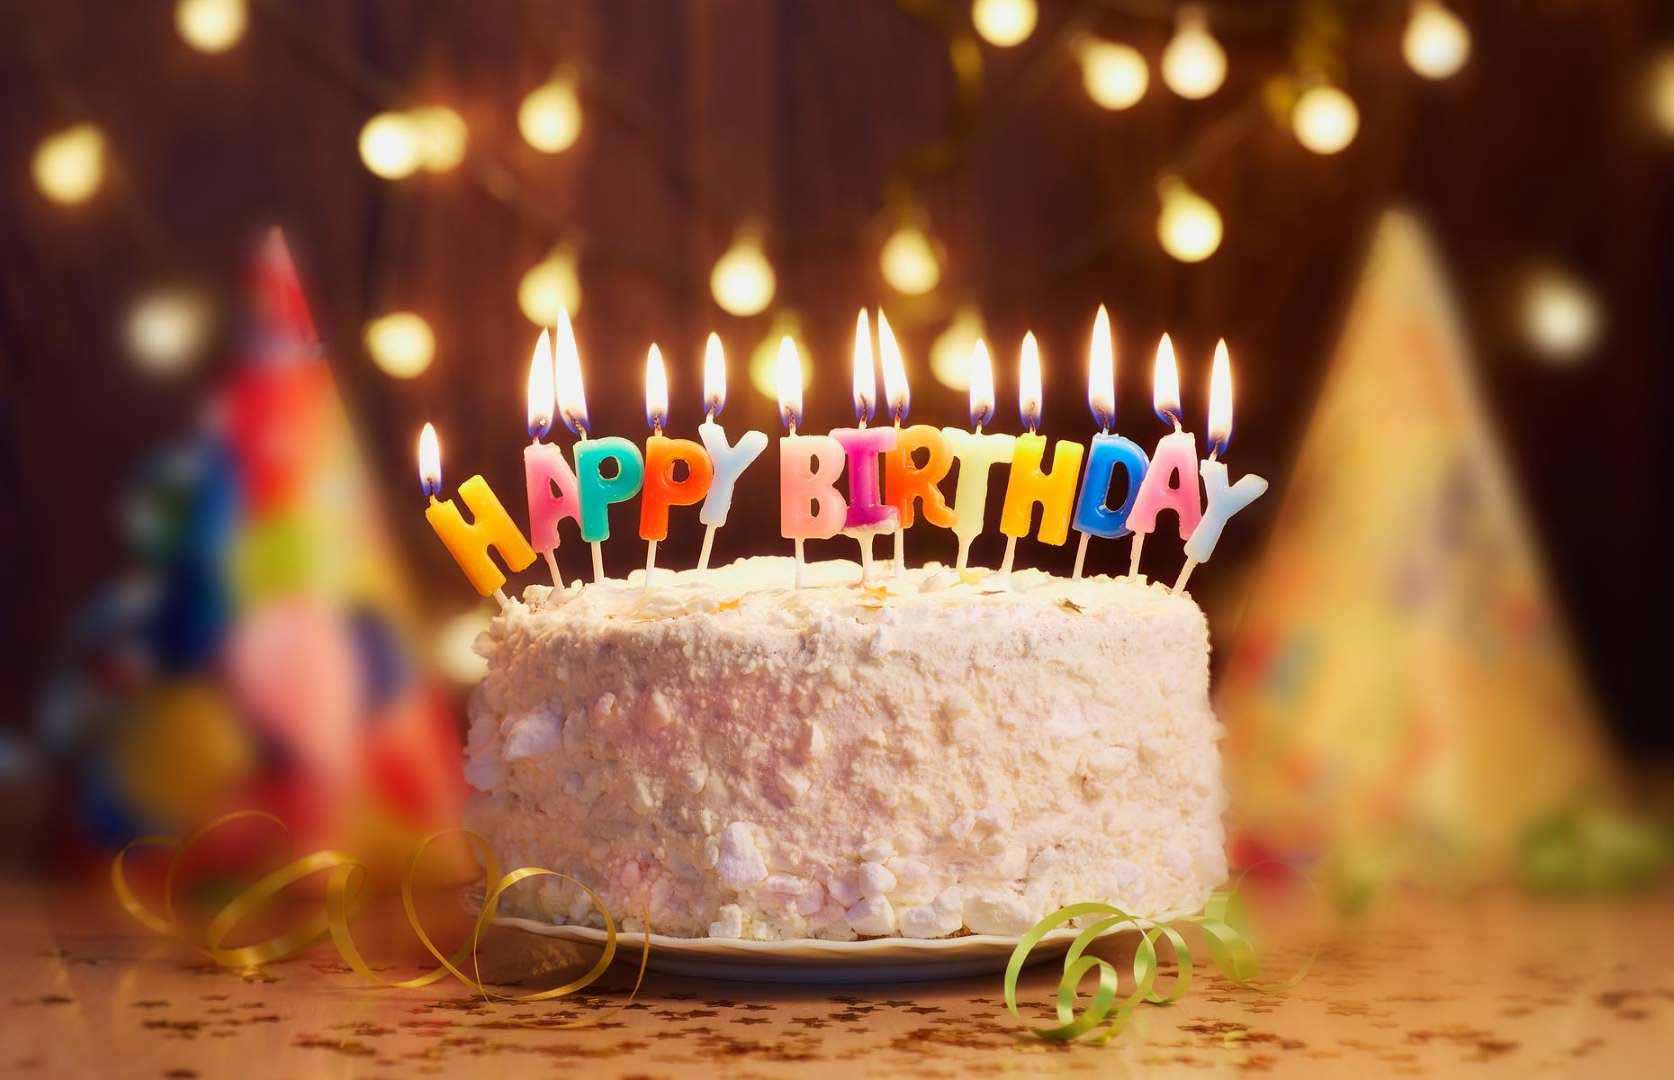 100 lời chúc sinh nhật anh trai bá đạo hài hước mà ý nghĩa